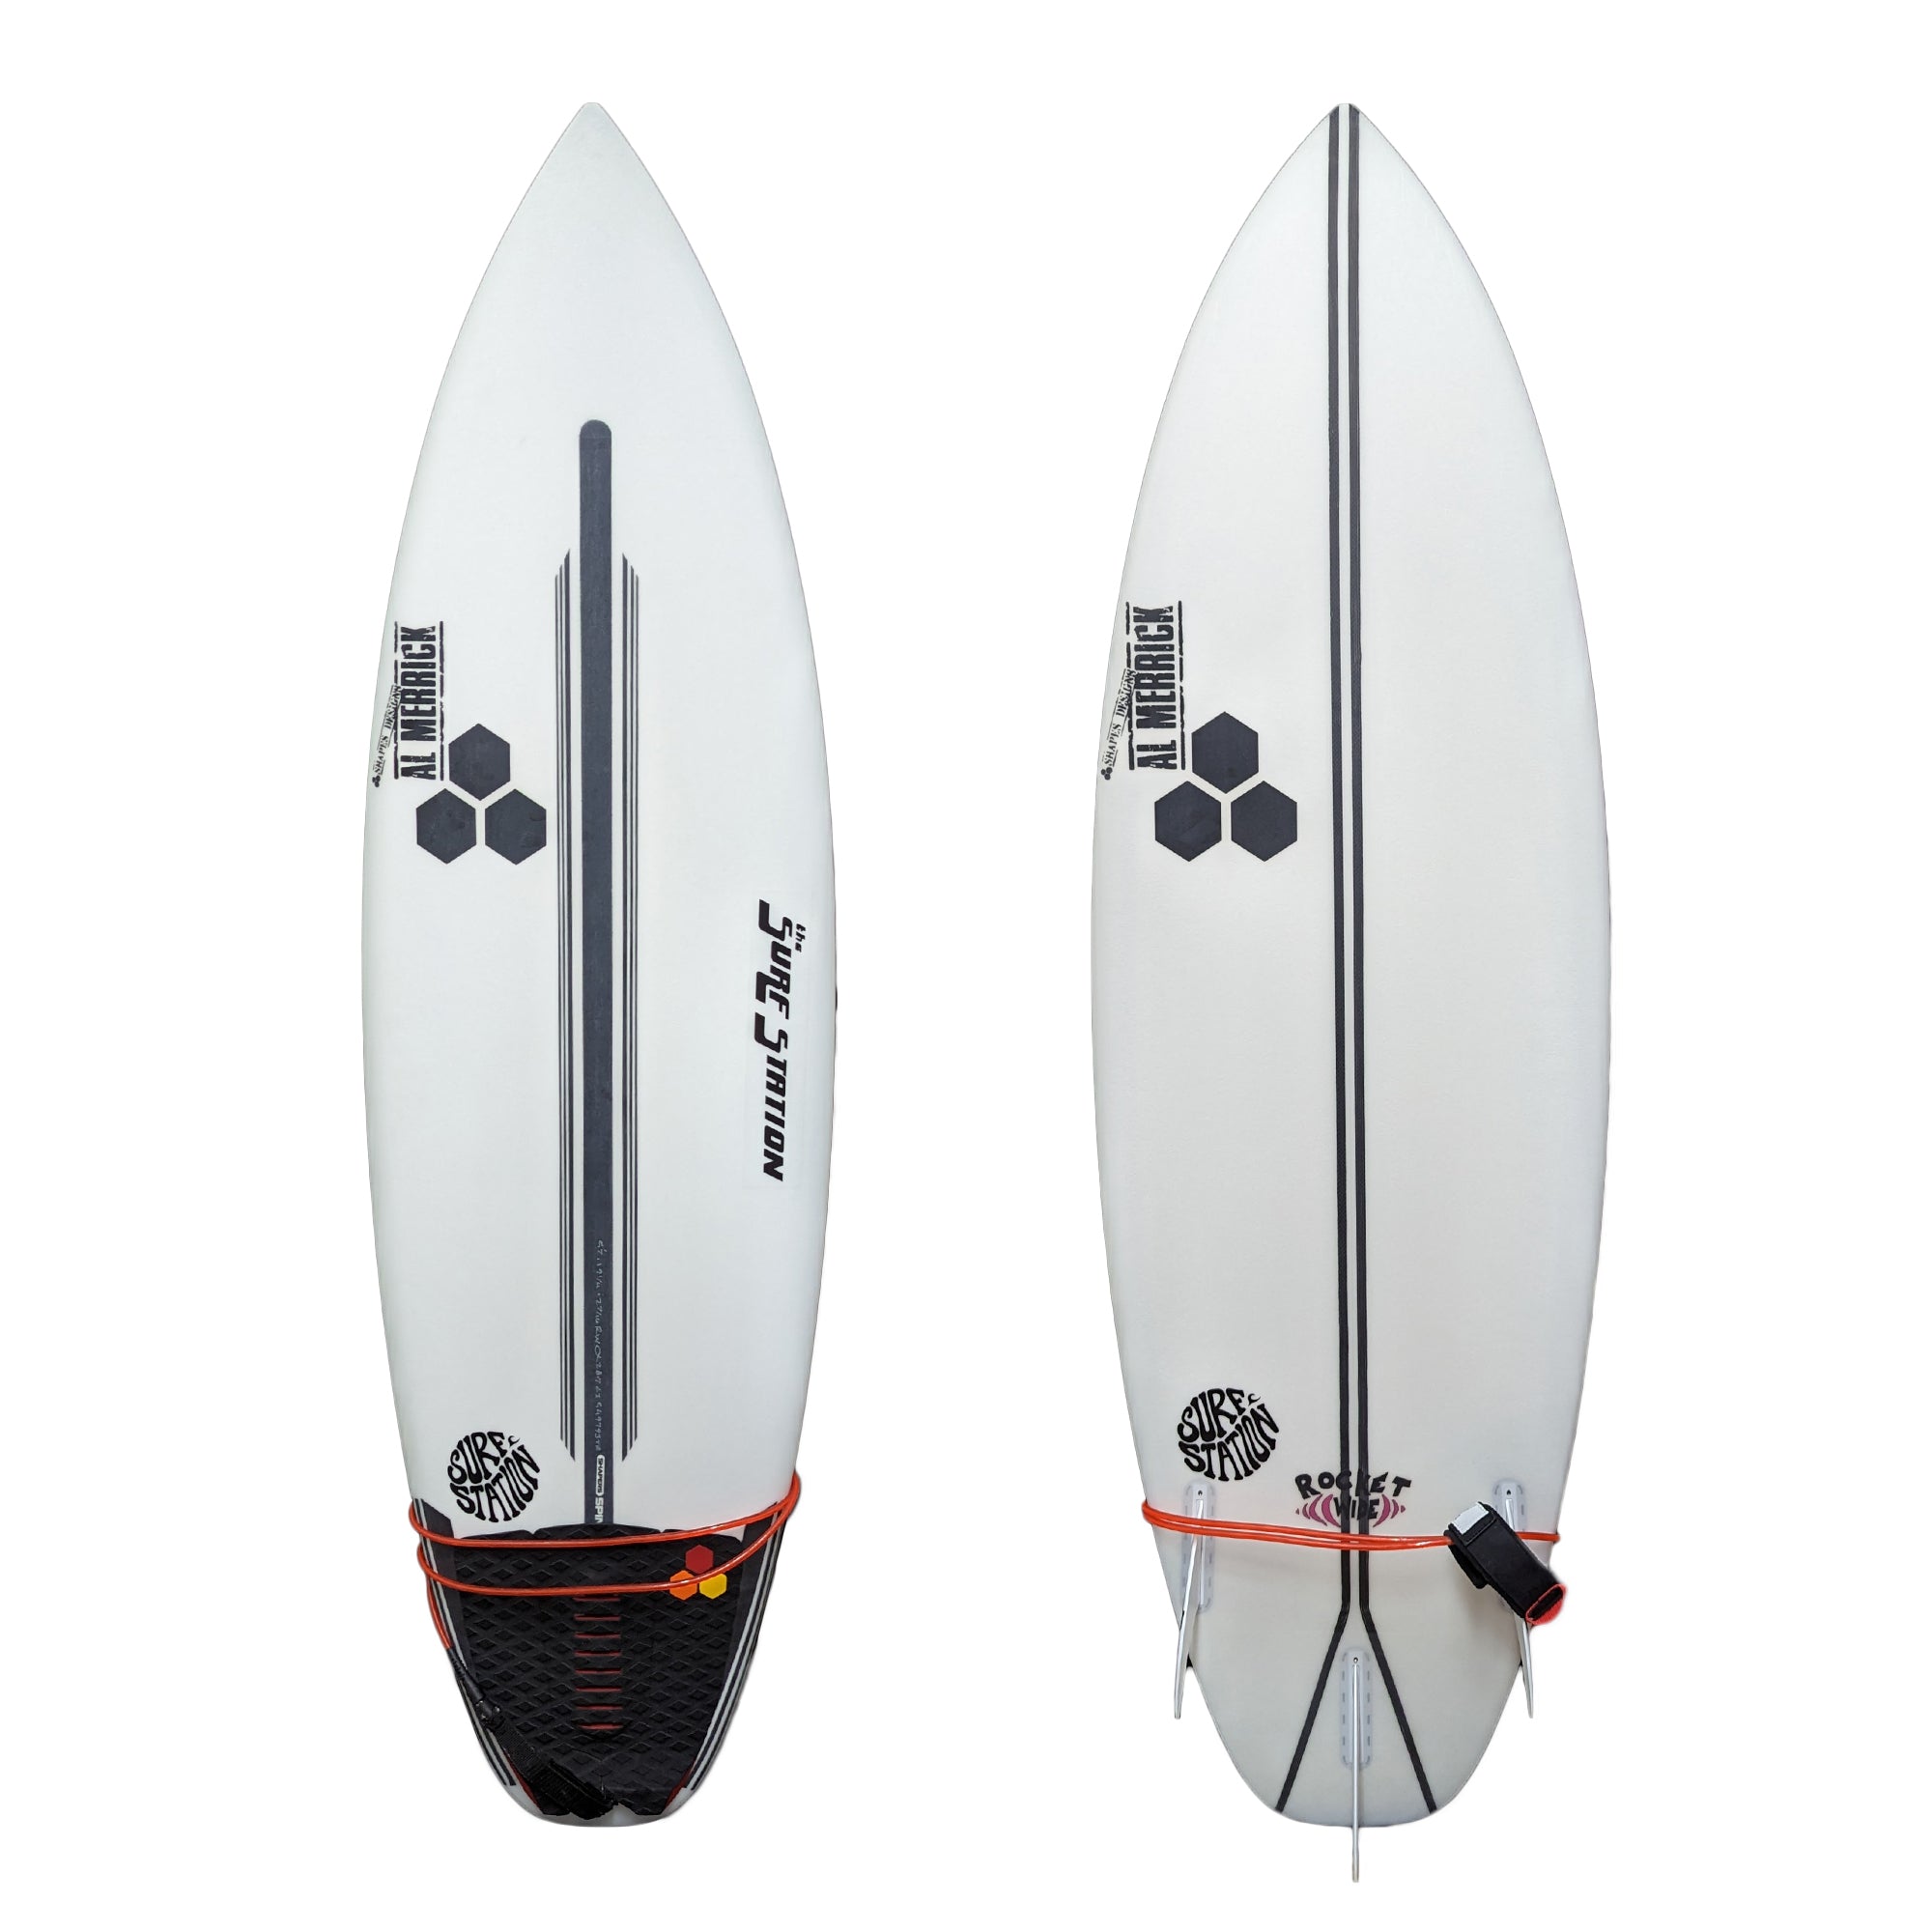 Channel Islands Rocket Wide Squash Spine-Tek Surfboard - Futures